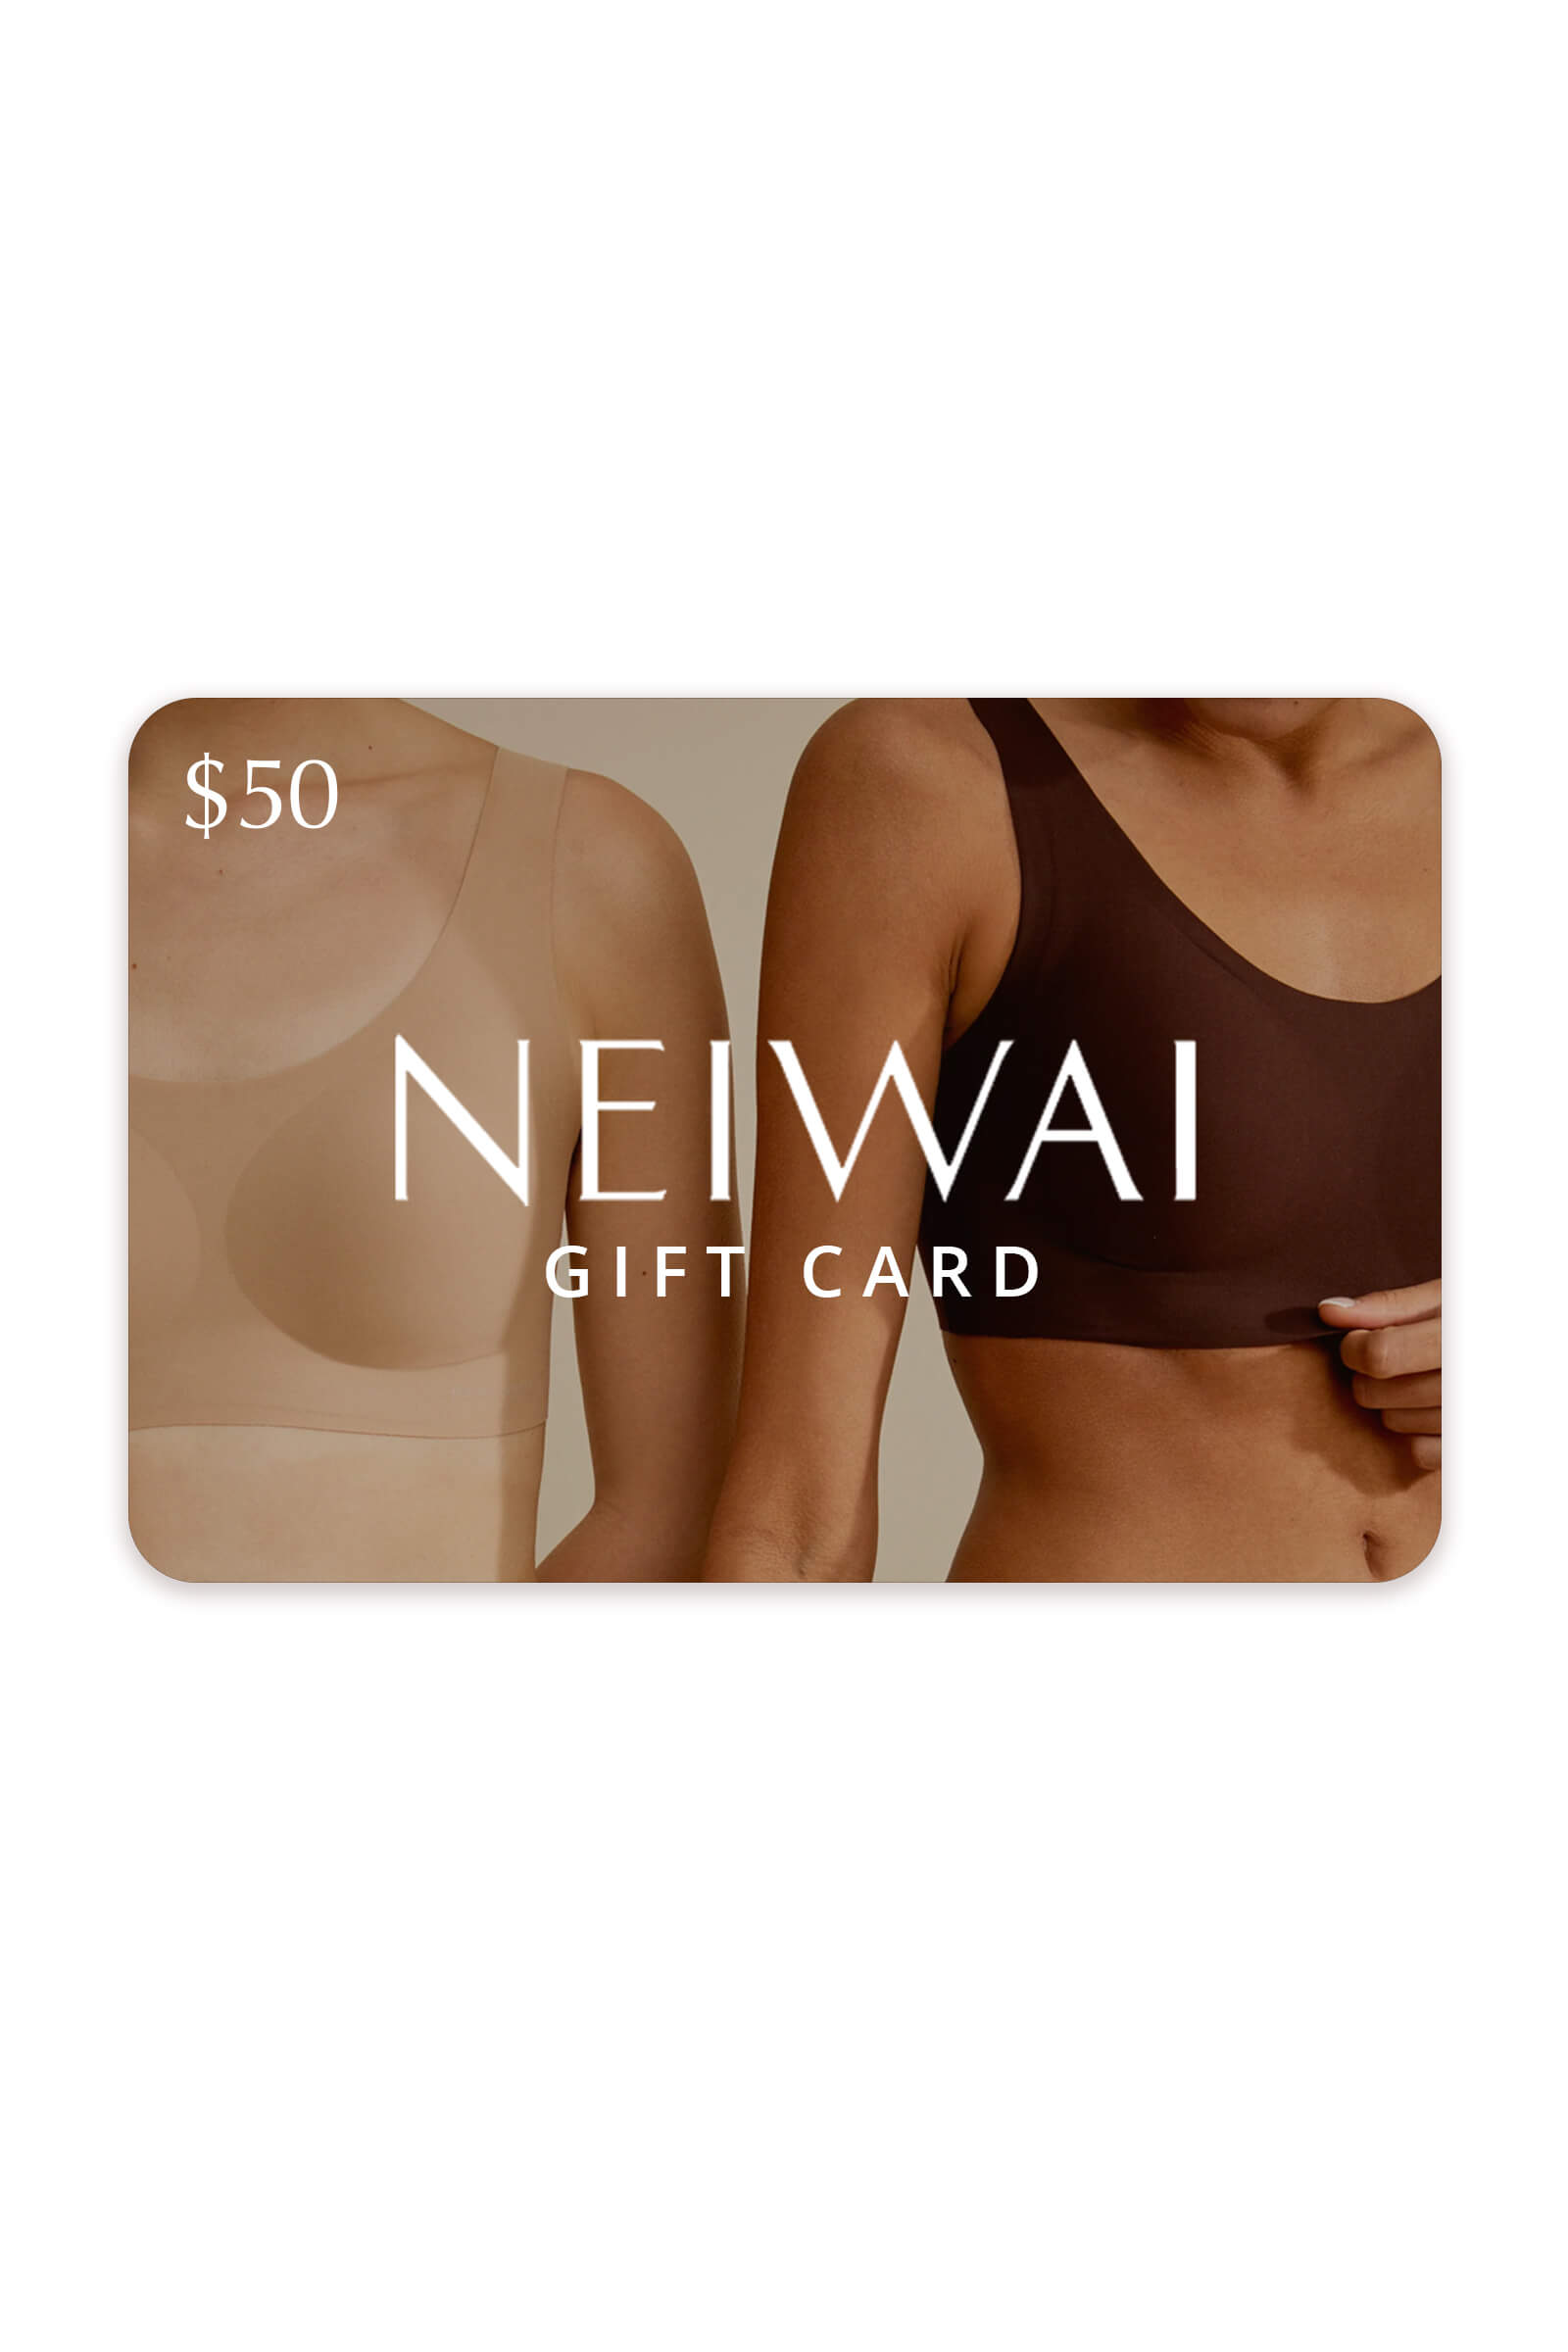 NEIWAI gift card $50